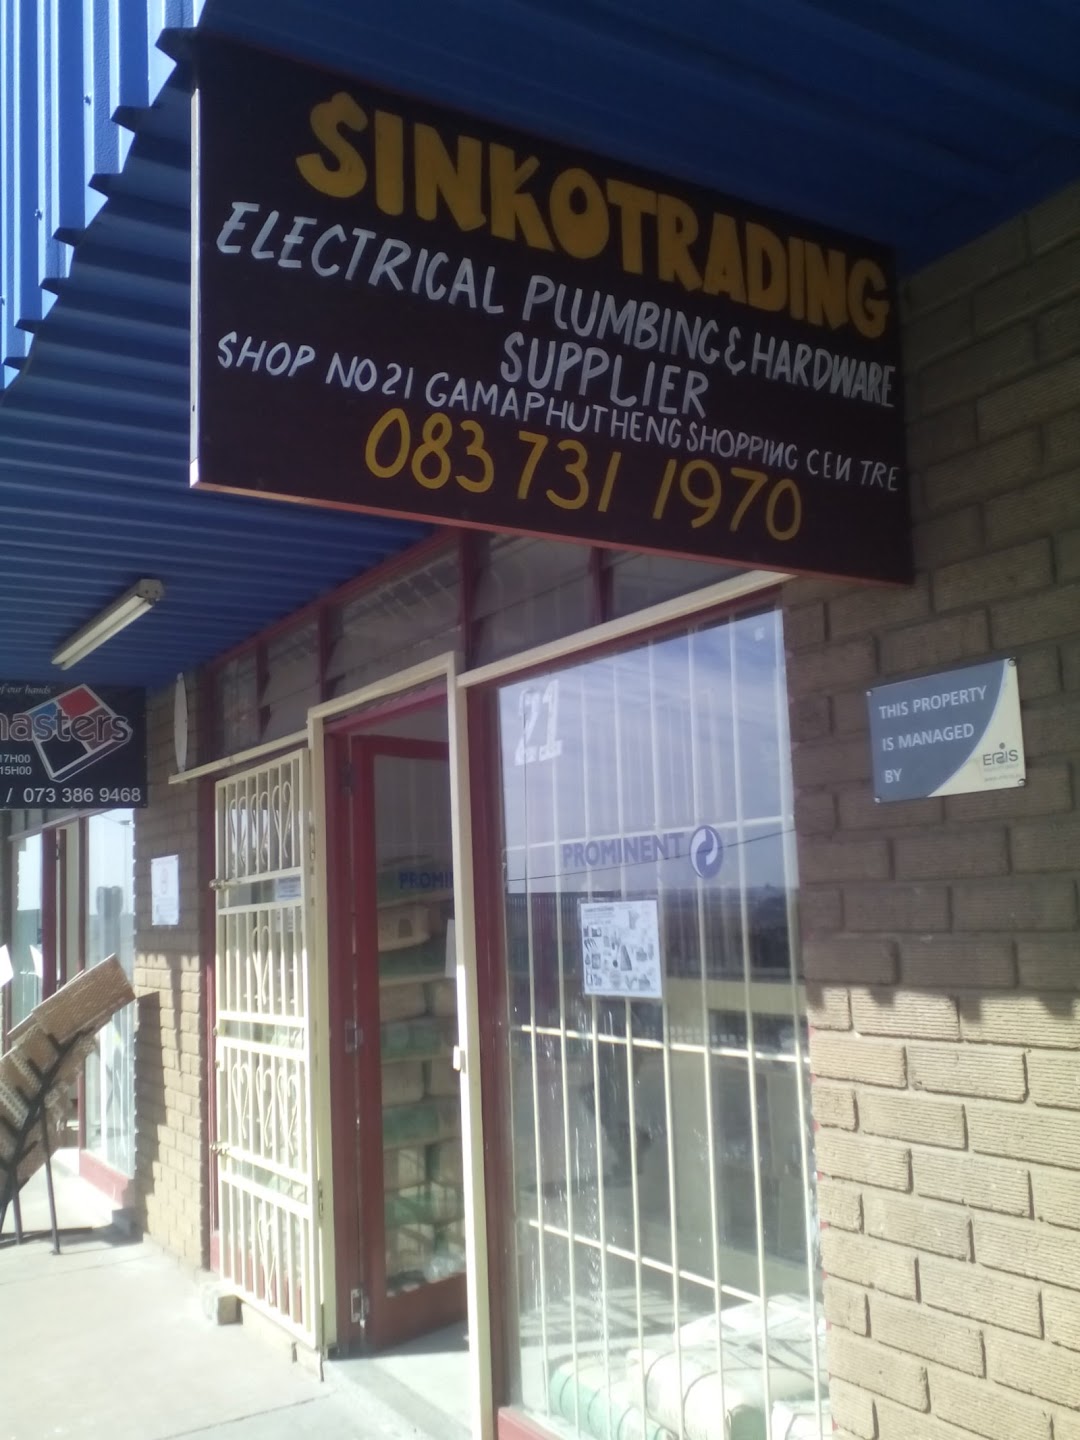 Sinko Trading Electrical Plumbing Hardware Supplier